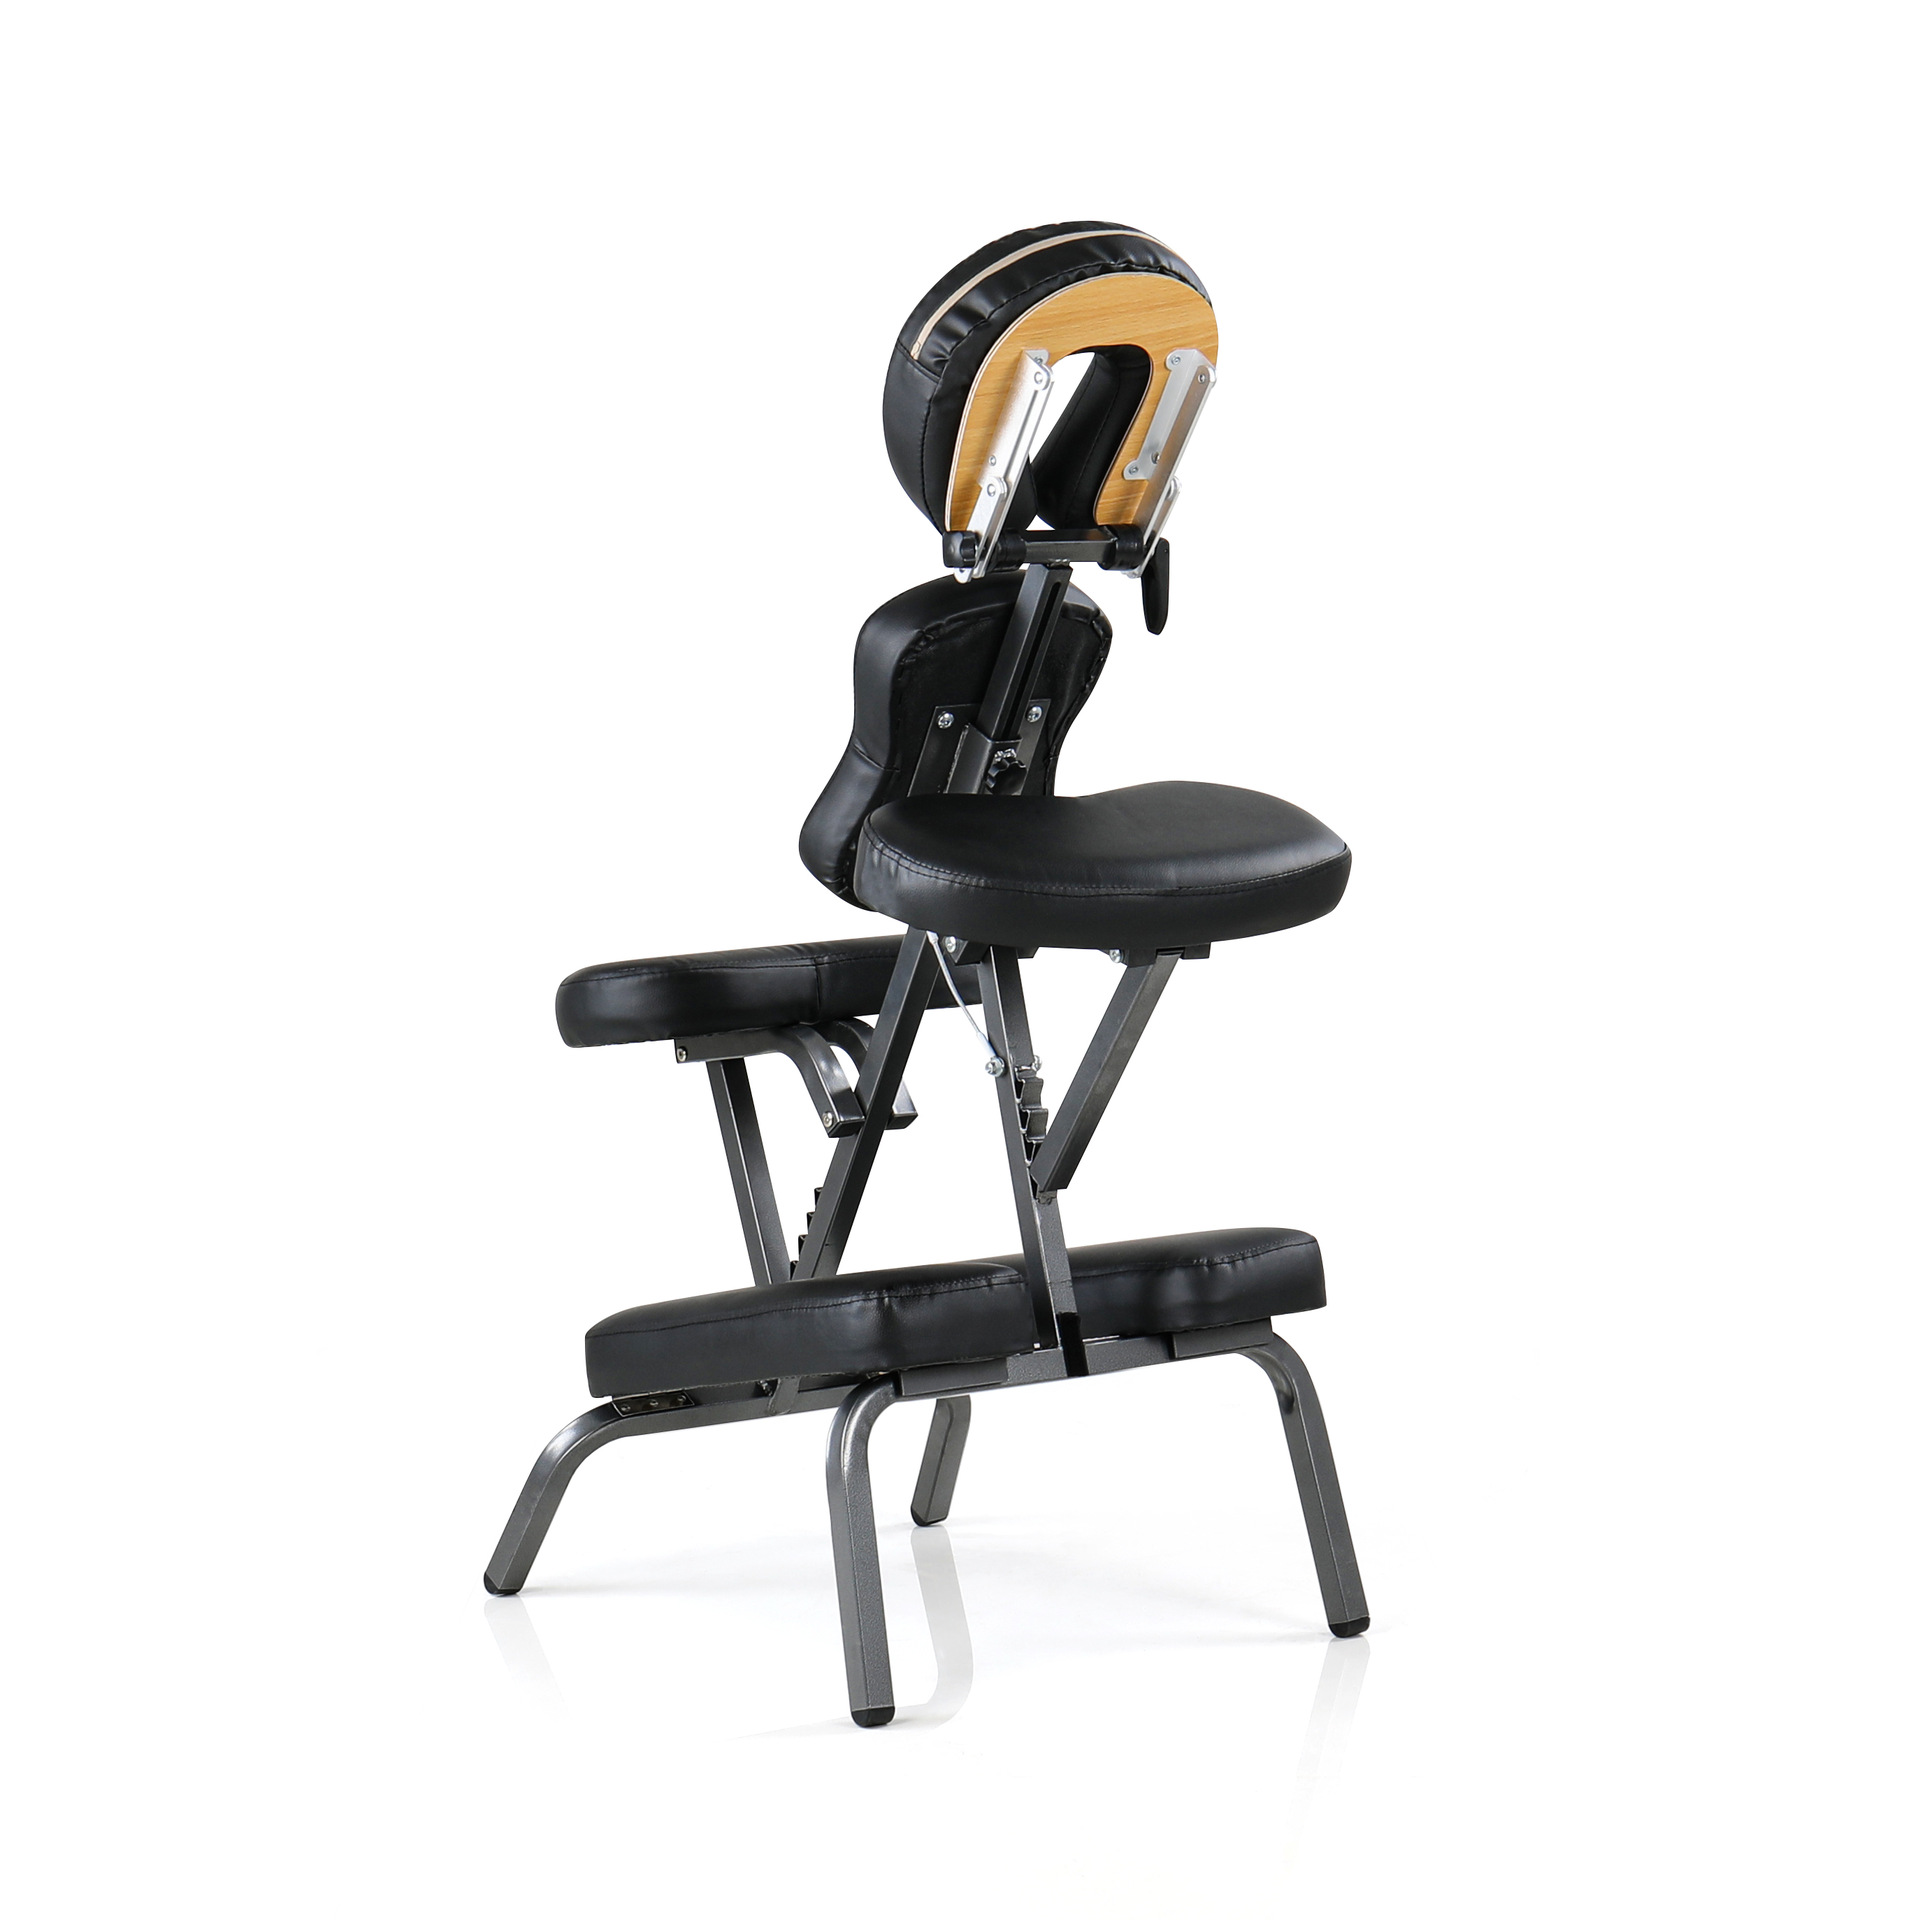 便携式按摩椅 可折叠跪趴式纹身椅 多功能肩颈支架按摩椅